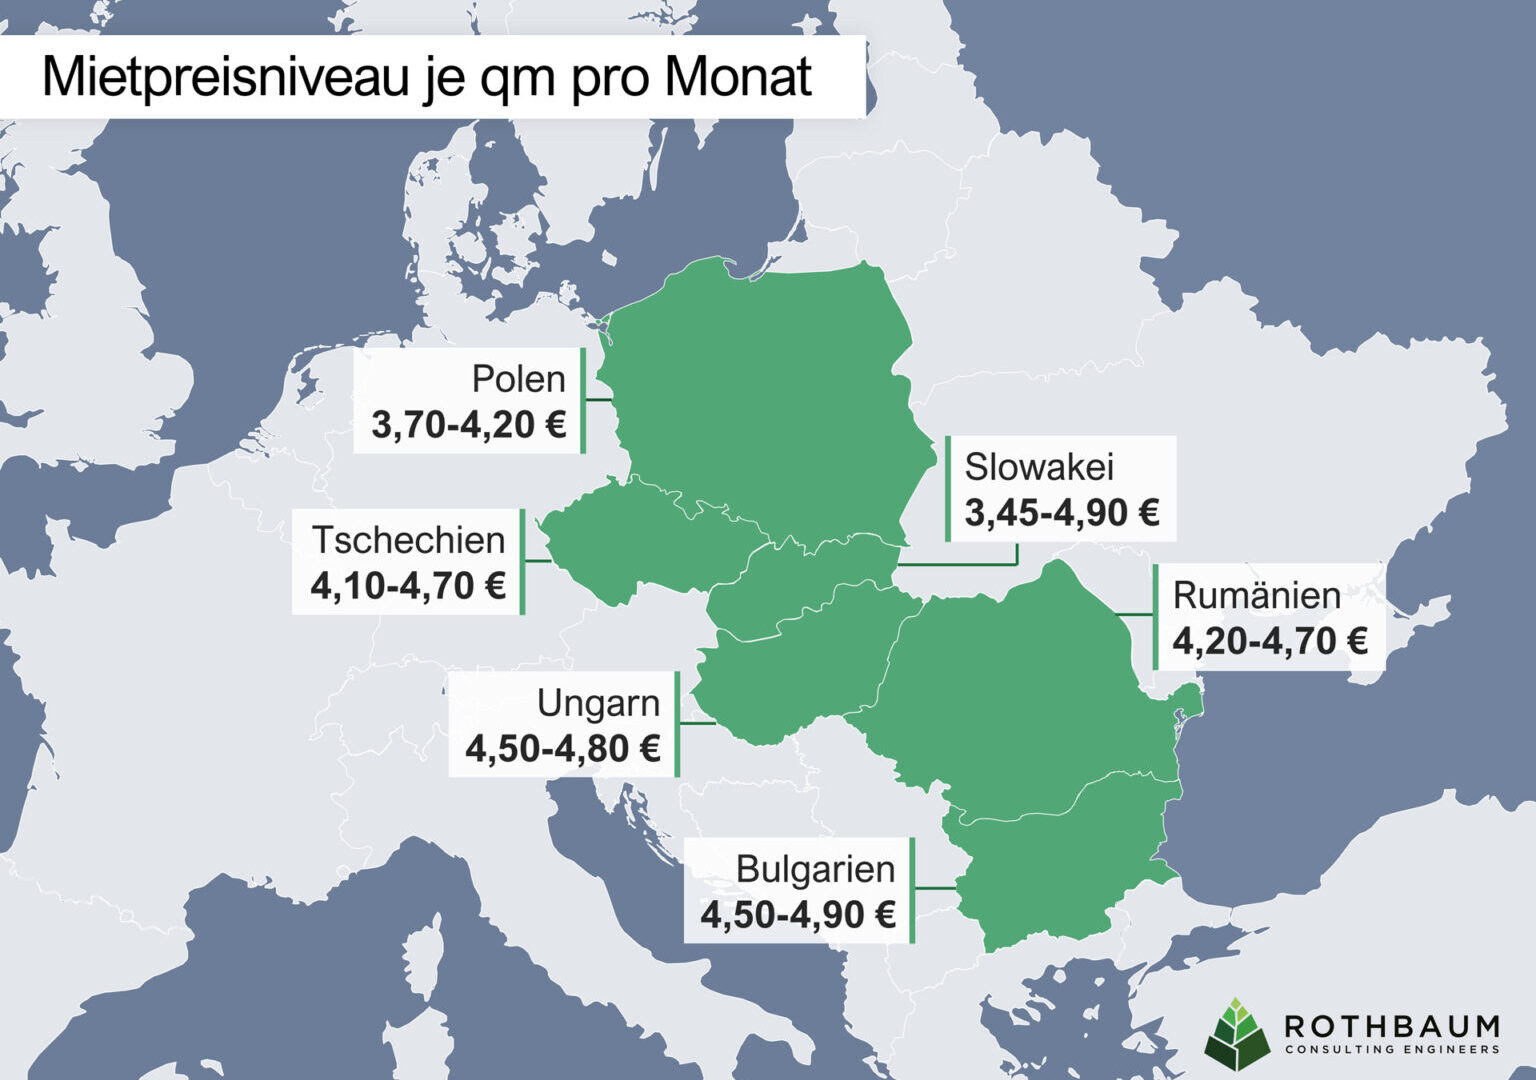 Das Mietpreisniveau je qm pro Monat in Osteuropa.